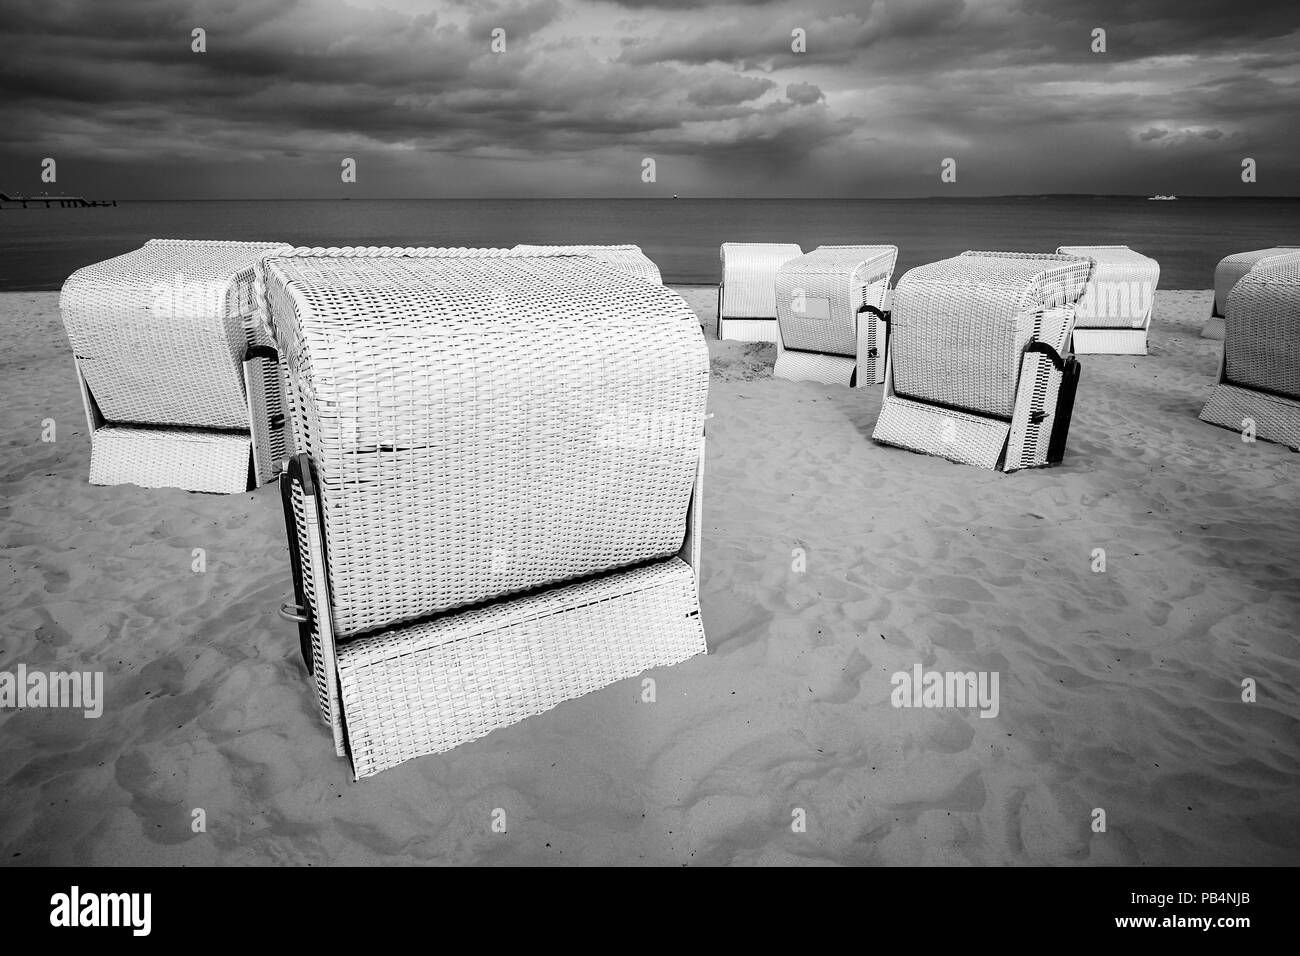 Sweats panier en osier chaises sur une plage vide avant une tempête. Banque D'Images